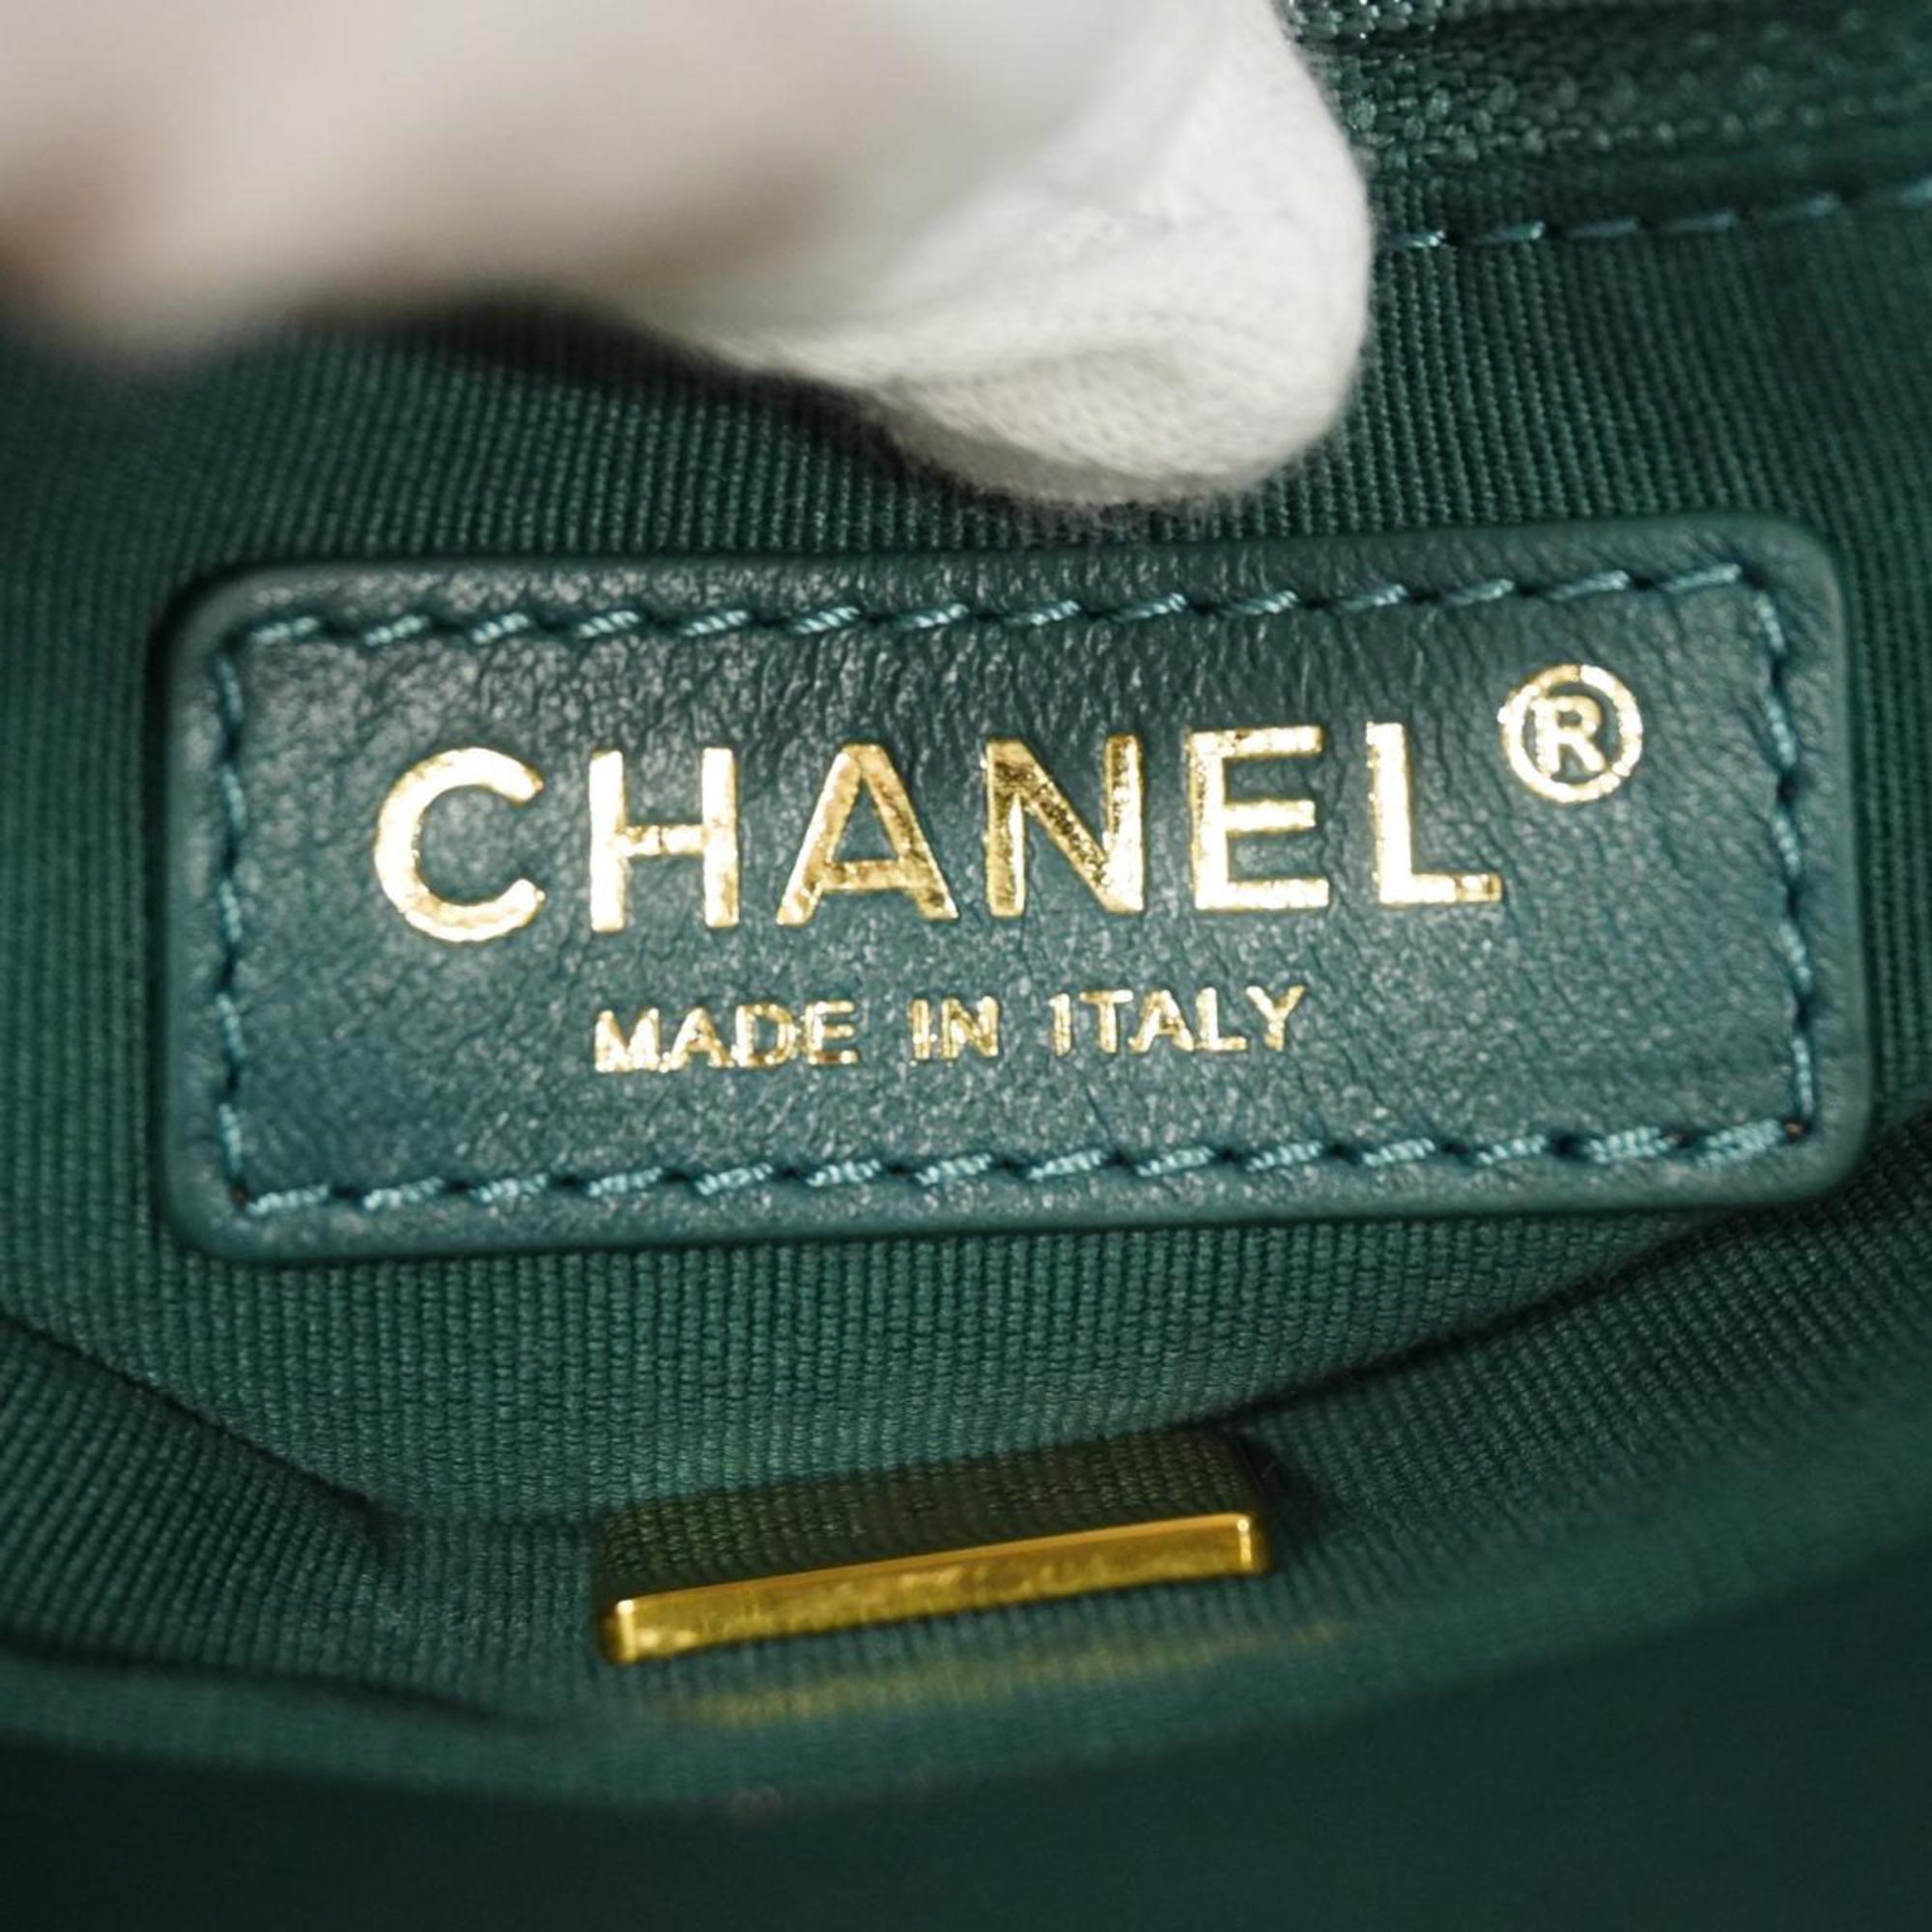 シャネル(Chanel) シャネル ショルダーバッグ マトラッセ チェーンショルダー ツイード グリーン   レディース